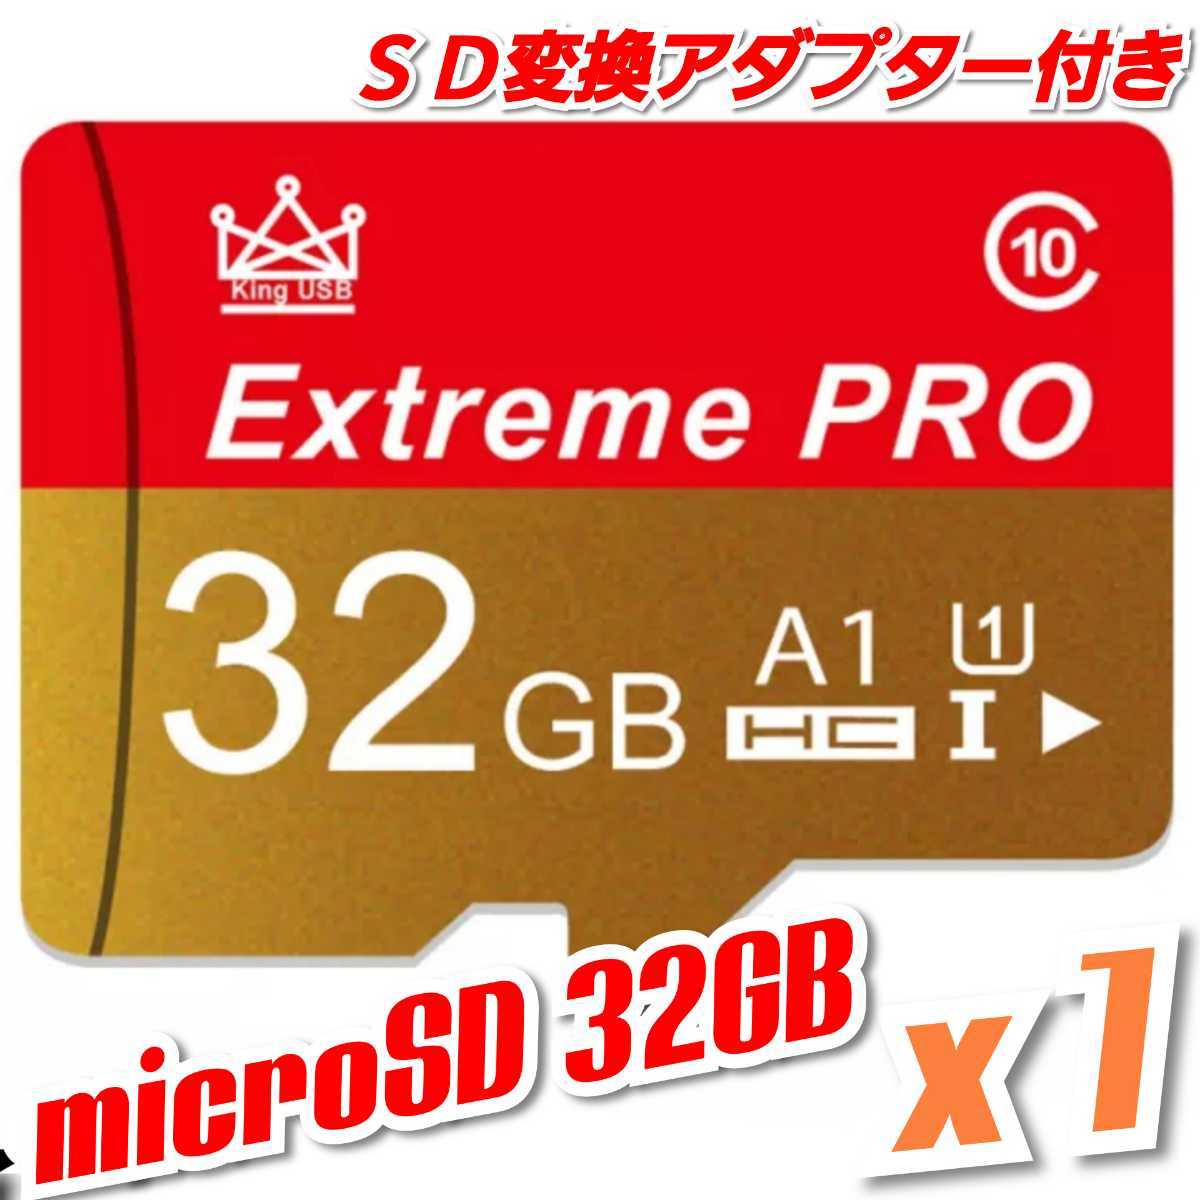 【送料無料】マイクロSDカード 32GB 1枚 class10 UHS-I 1個 microSD microSDHC マイクロSD EXTREME PRO 32GB RED-GOLD_画像1